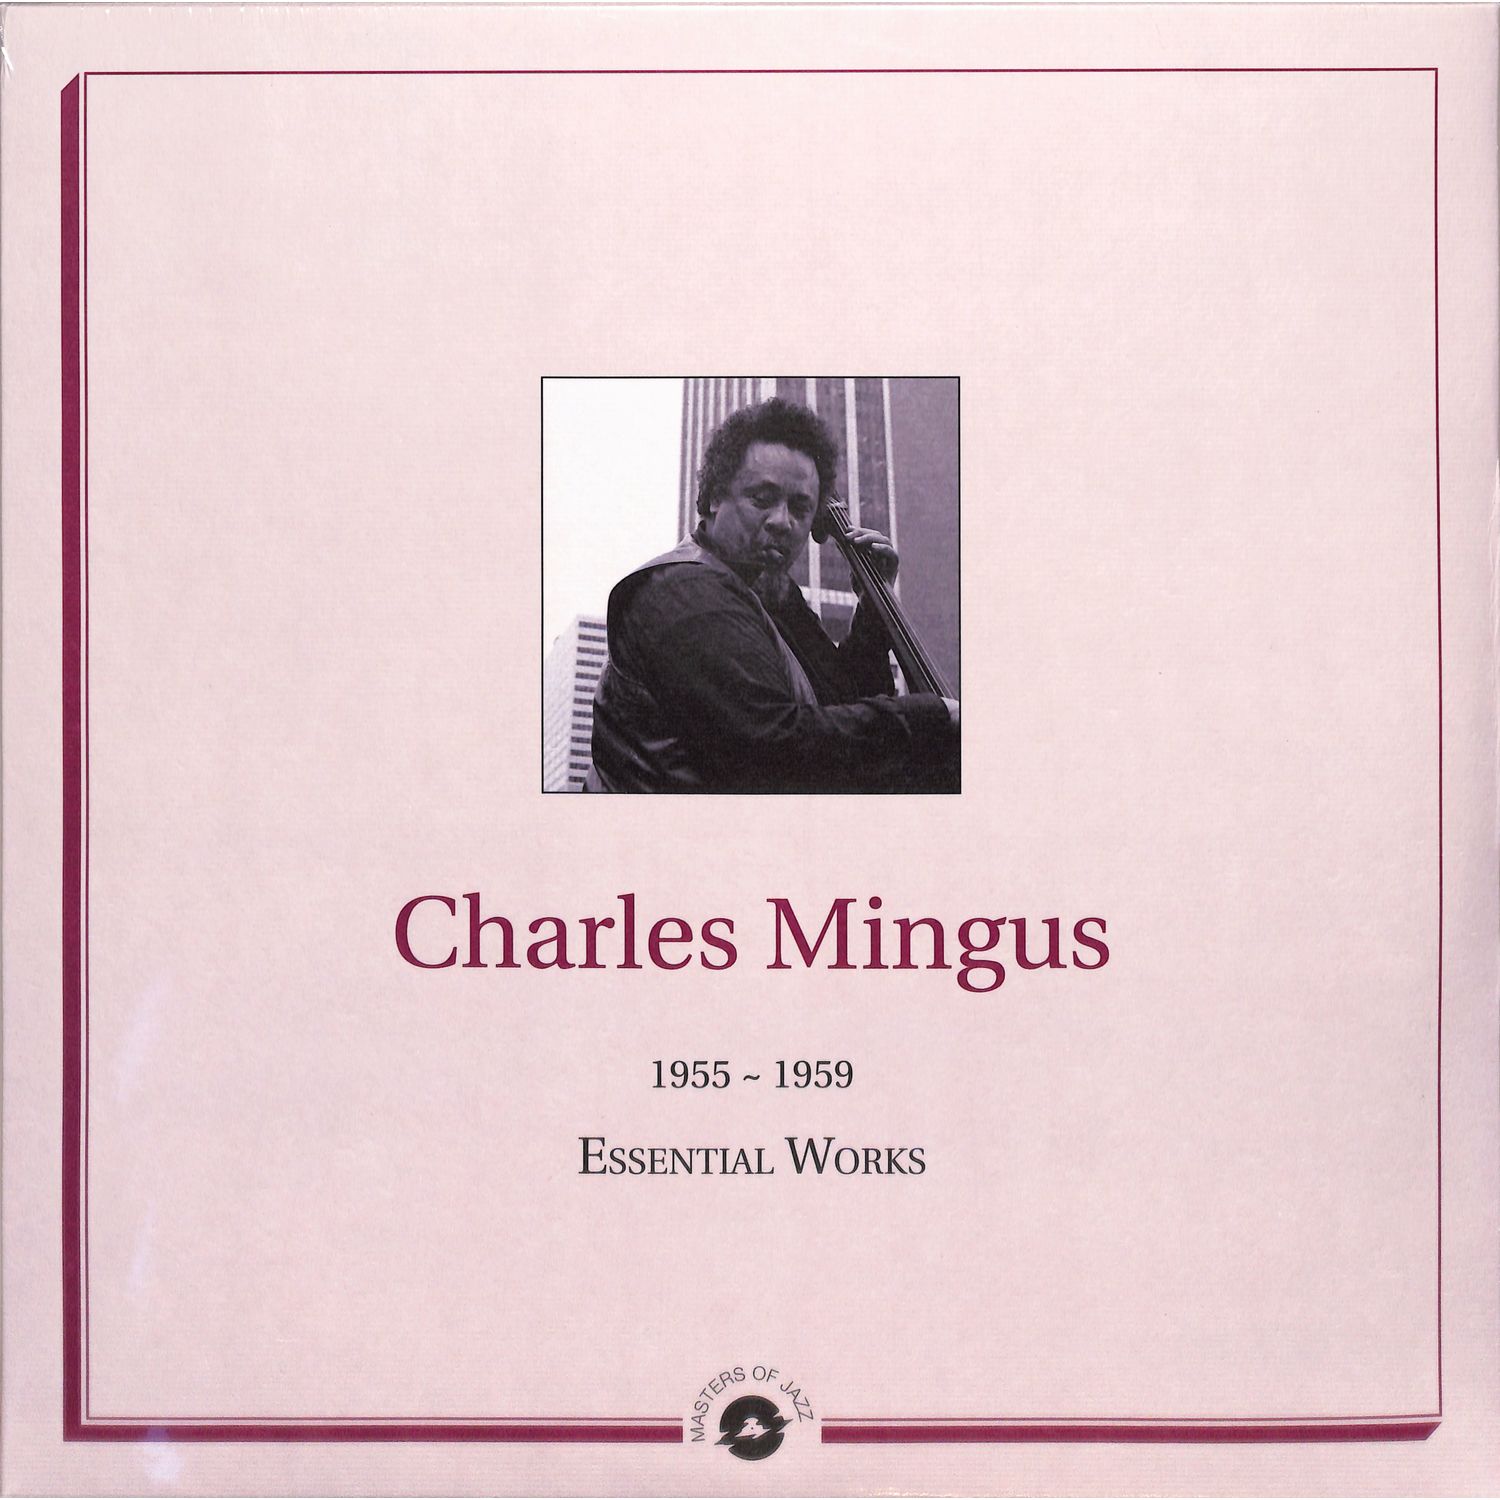 Charles Mingus - ESSENTIAL WORKS: 1955-1959 